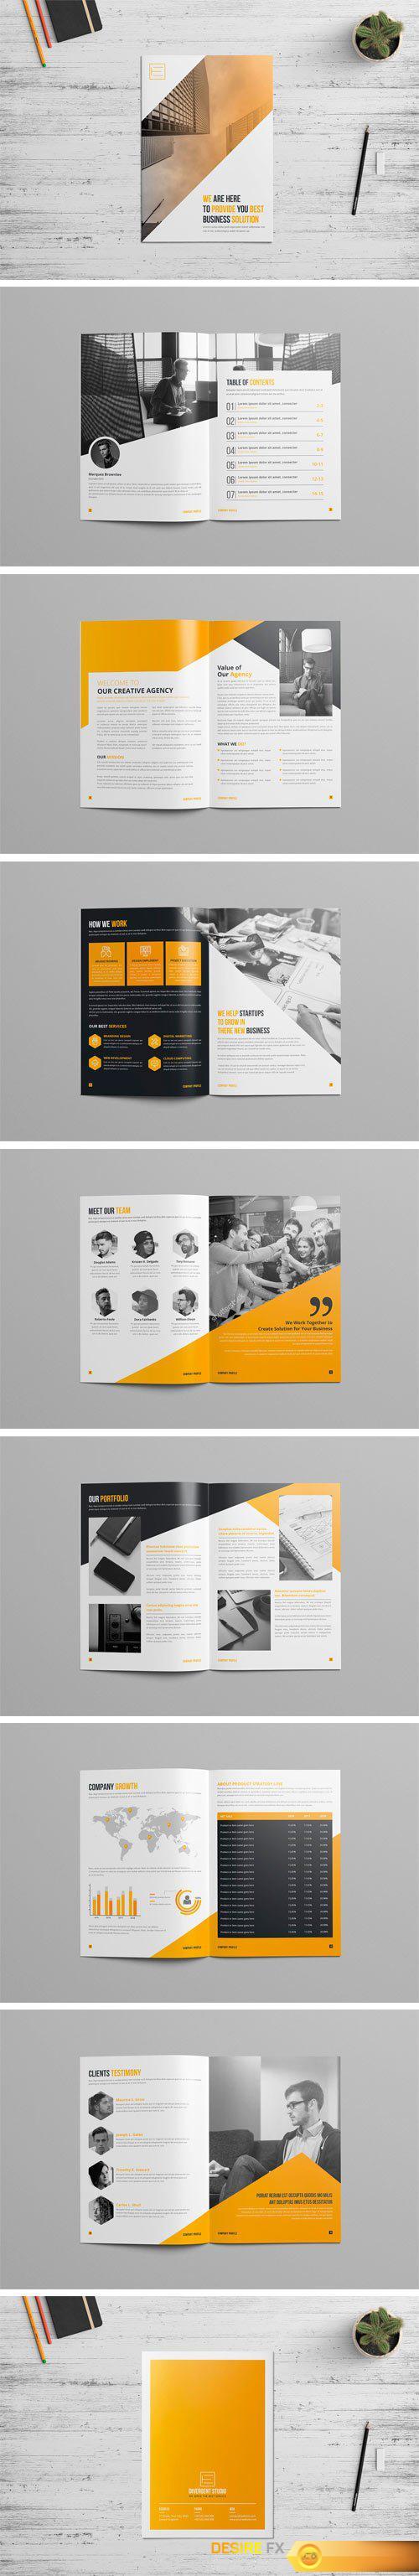 CM - Company Profile Brochure Template 2394103